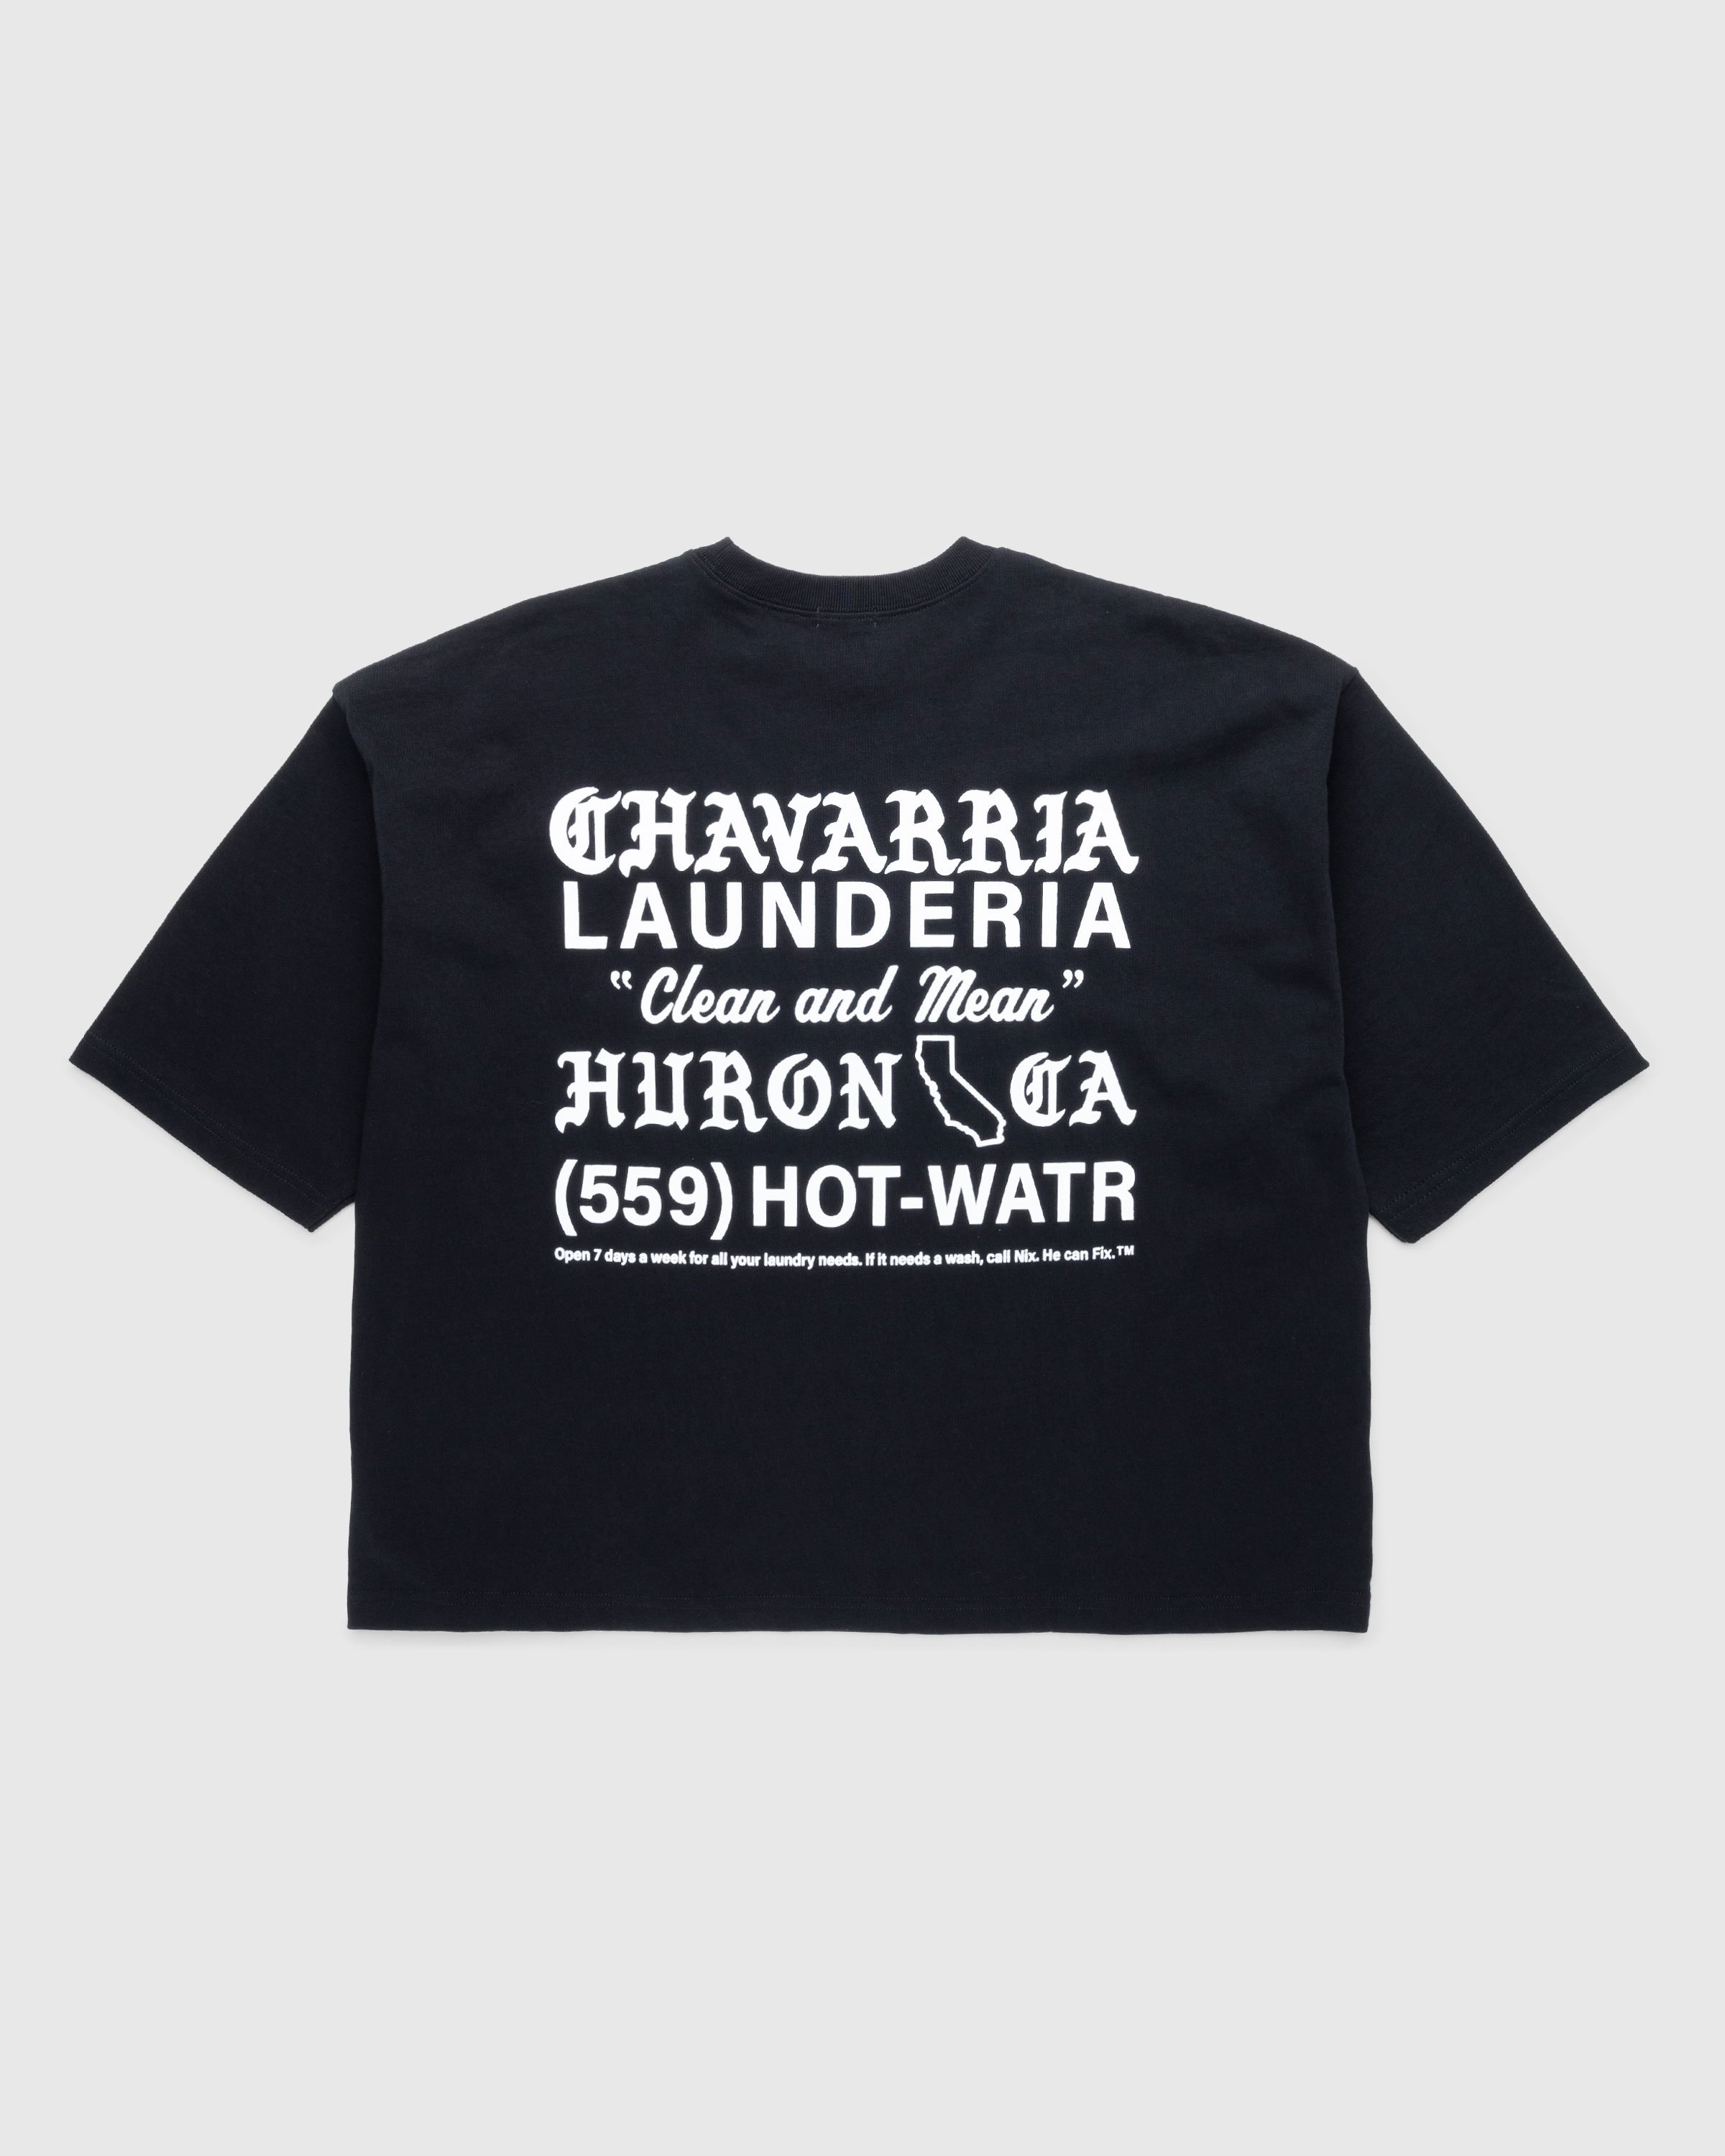 Willy Chavarria - Buffalo Pocket T-Shirt Black - Clothing - Black - Image 1